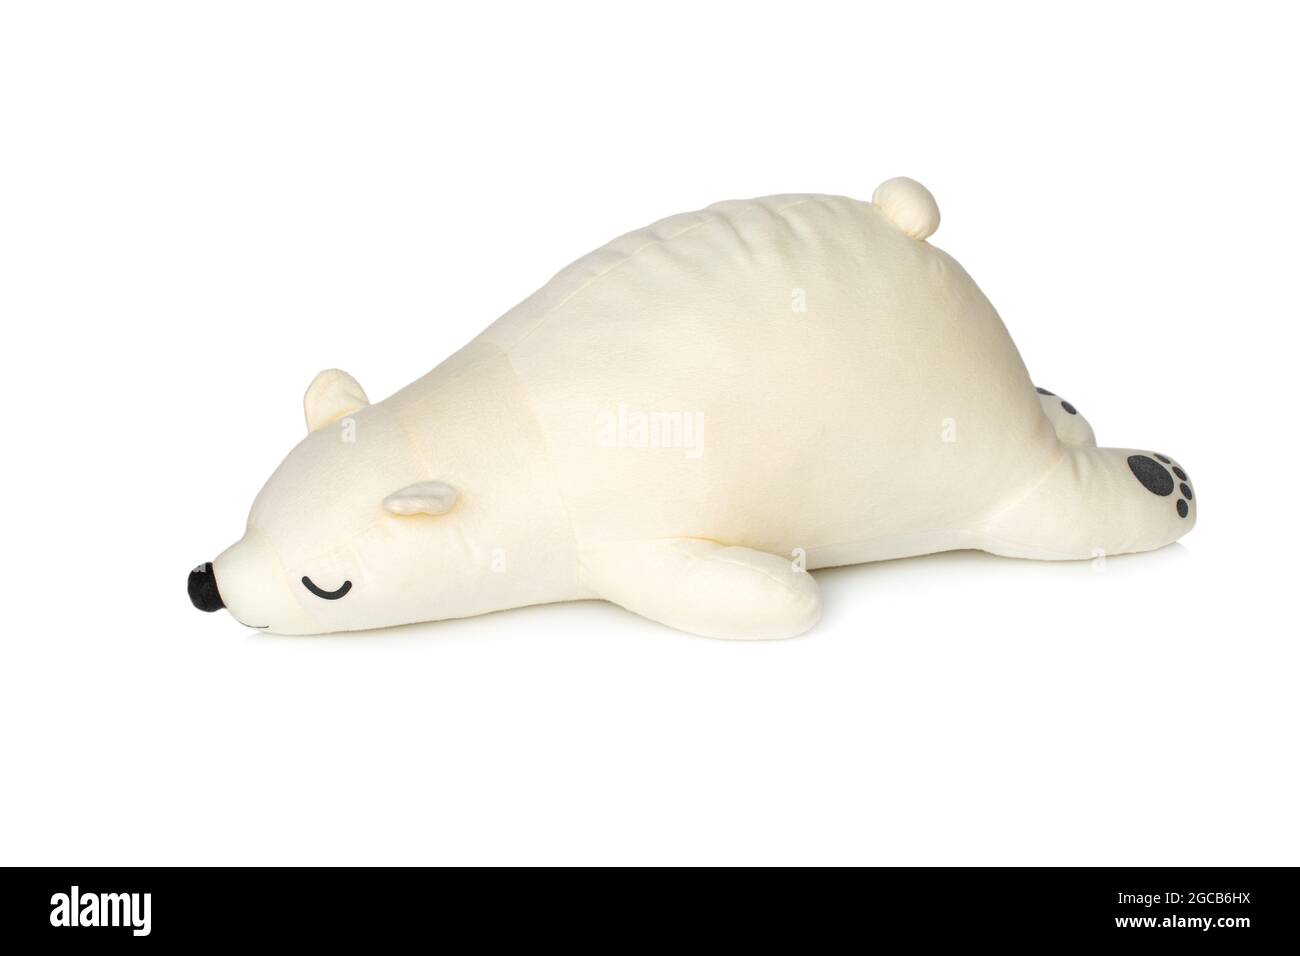 L'image d'un ours en peluche blanc est en veille isolée sur fond blanc. Poupées animales. Banque D'Images